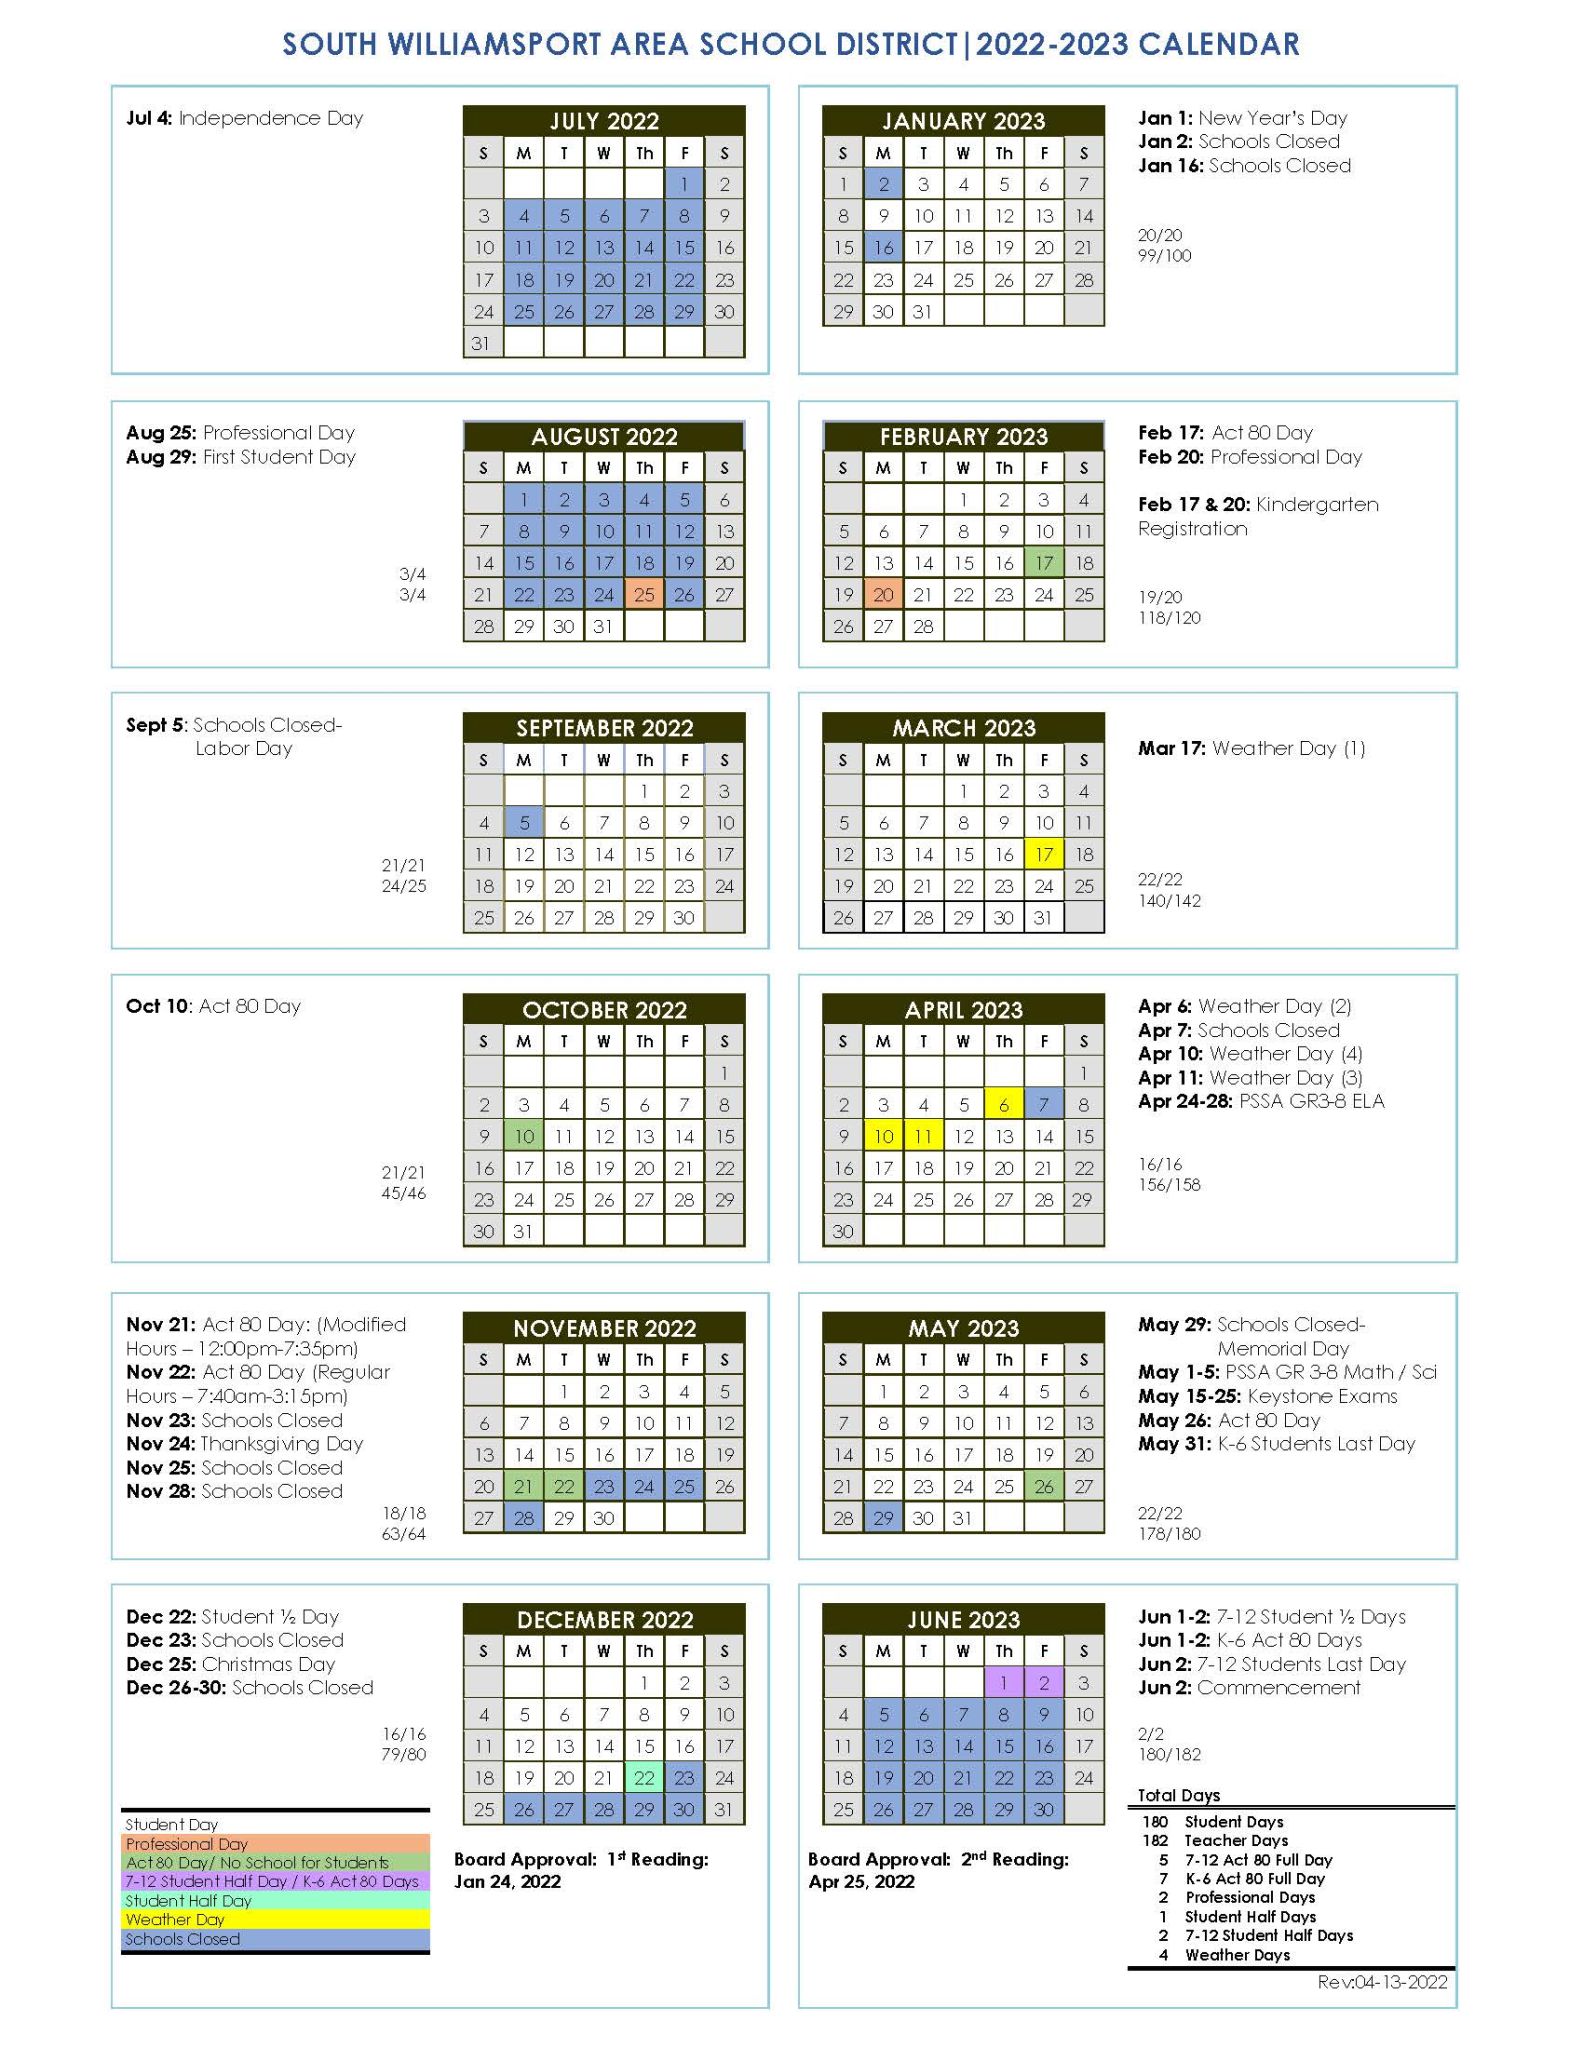 school-calendar-south-williamsport-area-school-district